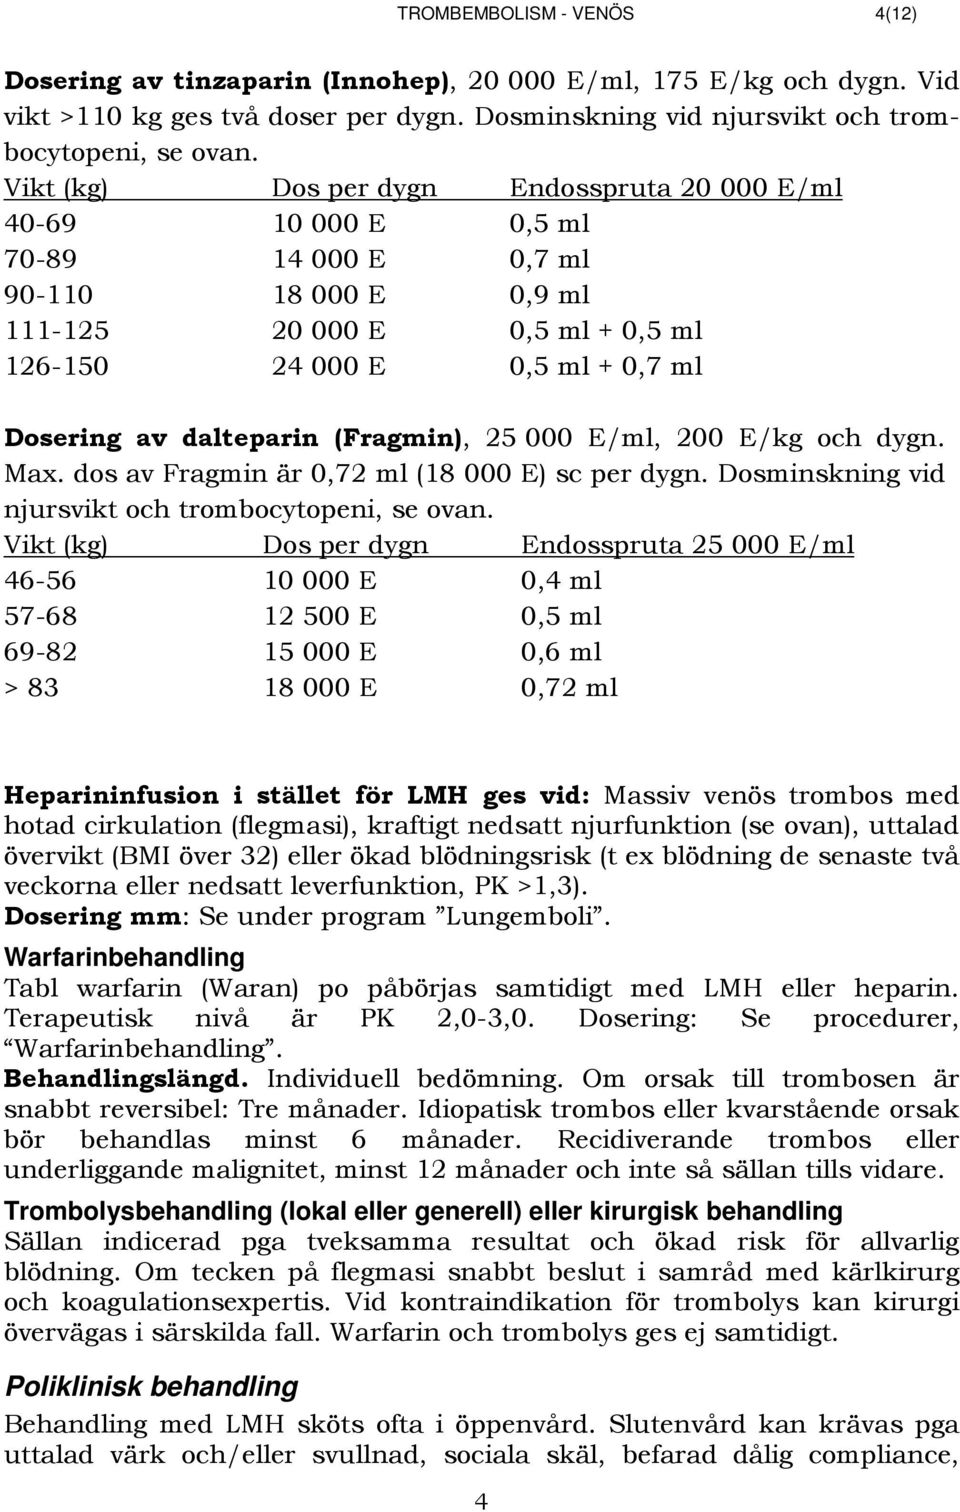 dalteparin (Fragmin), 25 000 E/ml, 200 E/kg och dygn. Max. dos av Fragmin är 0,72 ml (18 000 E) sc per dygn. Dosminskning vid njursvikt och trombocytopeni, se ovan.